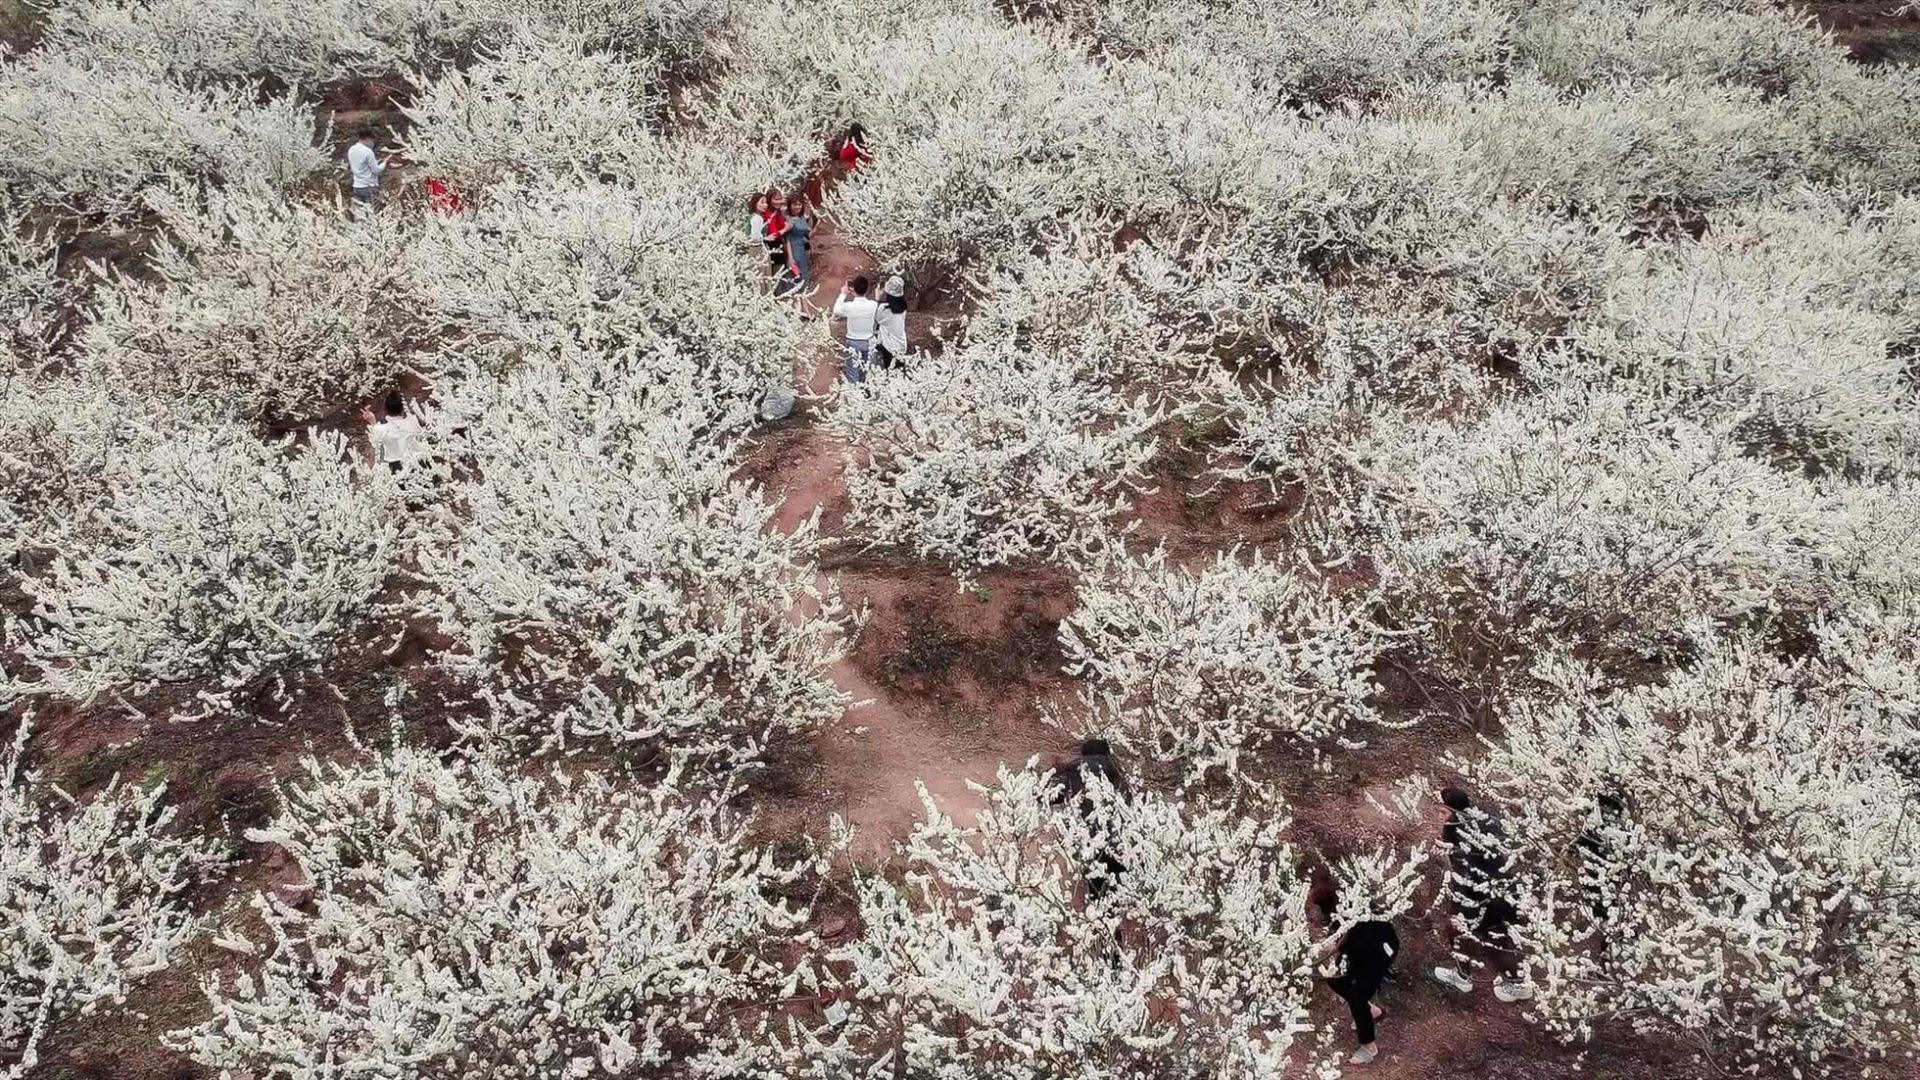 Đây là cơ ngơi của gia đình bác Hoàng Văn Thi, một người dân địa phương. Vườn mận được trồng đều tăm tắp, với những cành hoa nở trắng xóa cả một vùng trời, như những làn mây trắng lượn lờ trôi, vô cùng đẹp mắt.